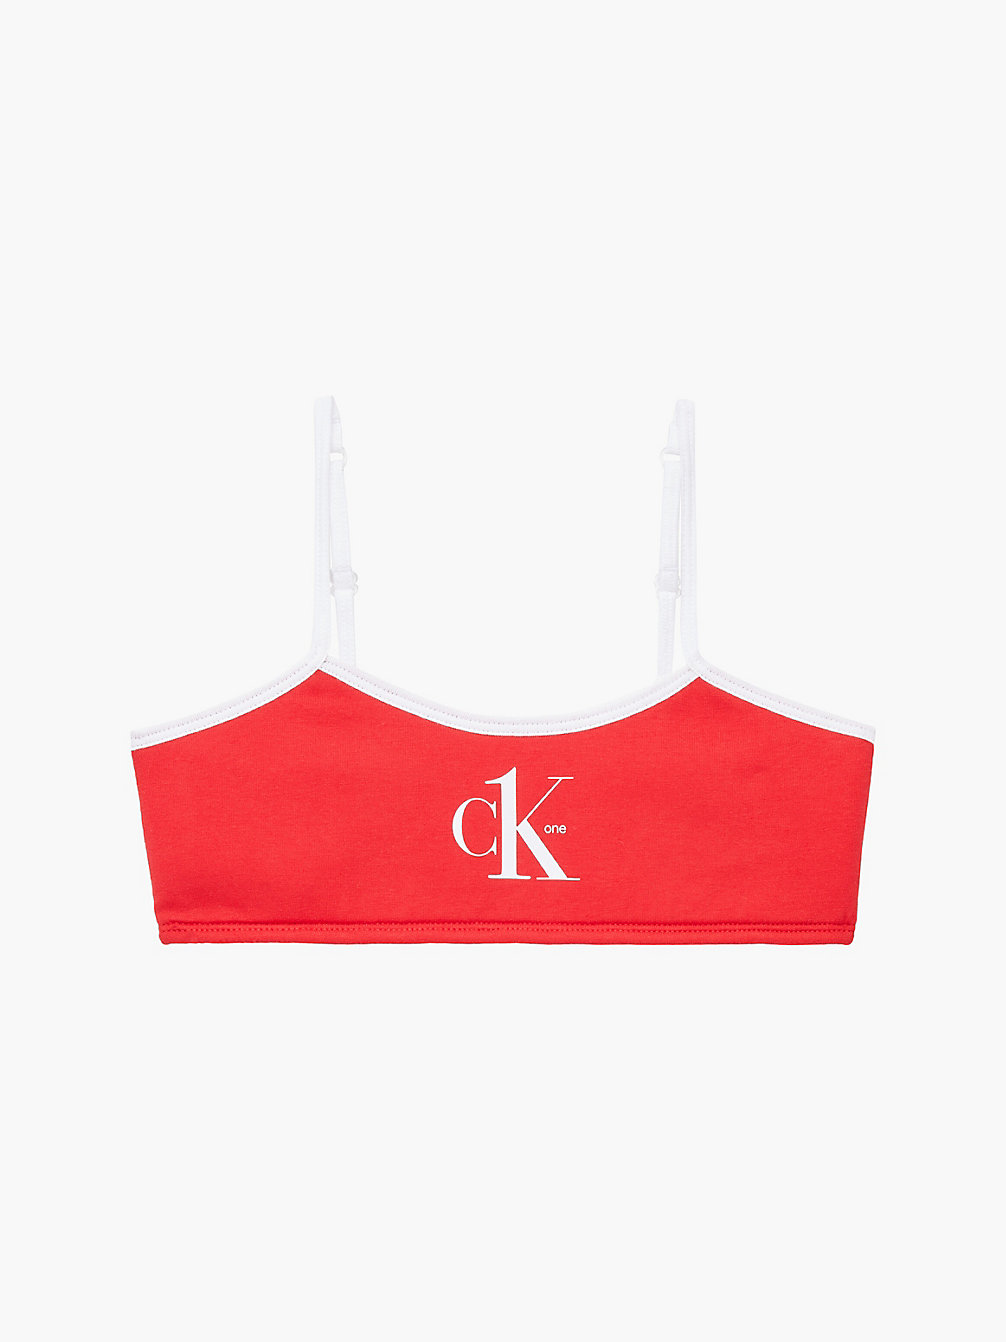 RED HOT > Bralette Für Mädchen – CK One > undefined girls - Calvin Klein